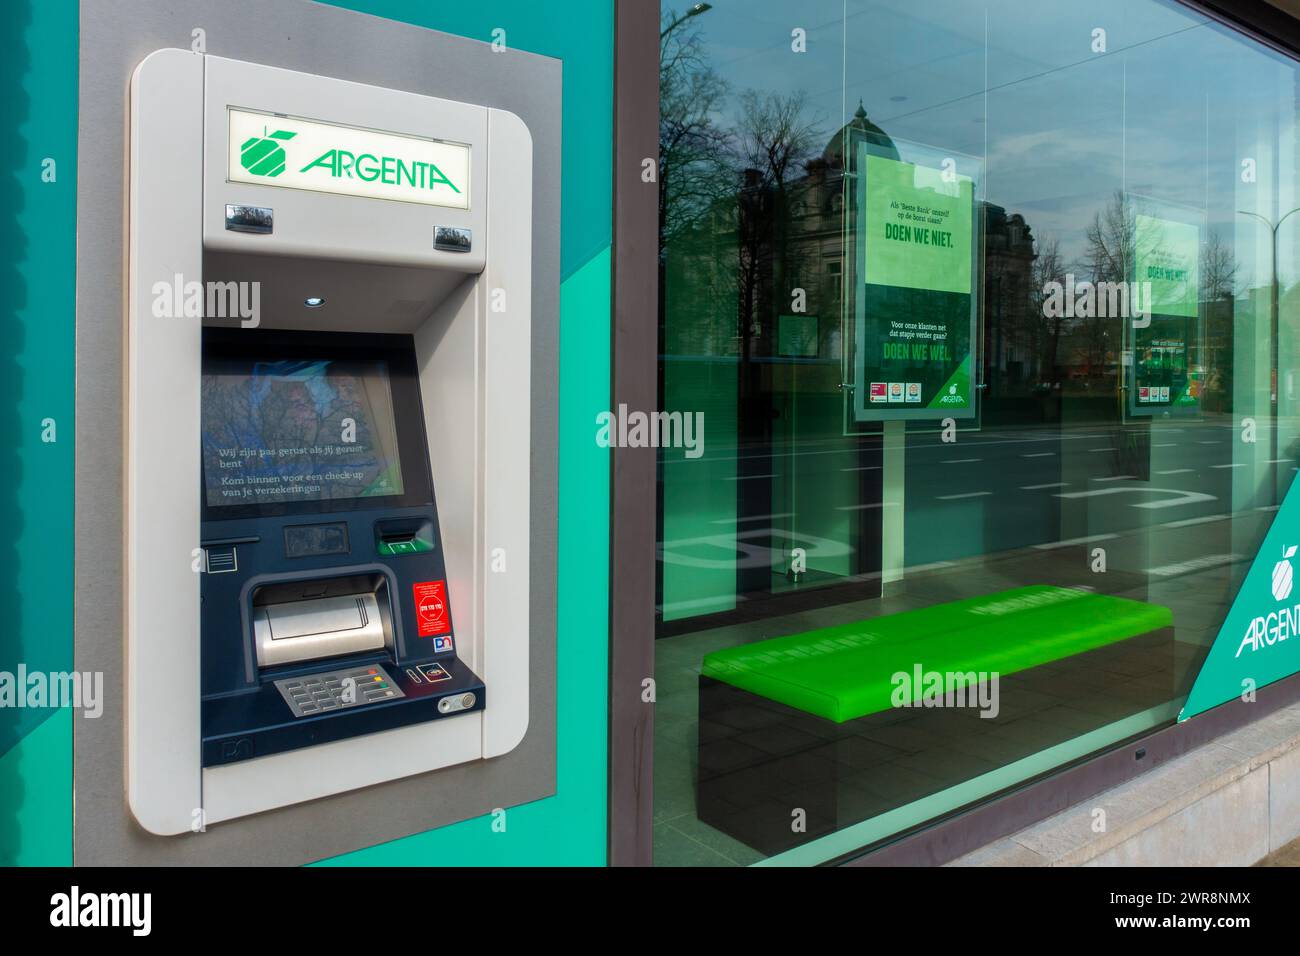 Cajero automático al aire libre dispensador / cashpoint de la oficina bancaria de Argenta en Flandes, Bélgica Foto de stock